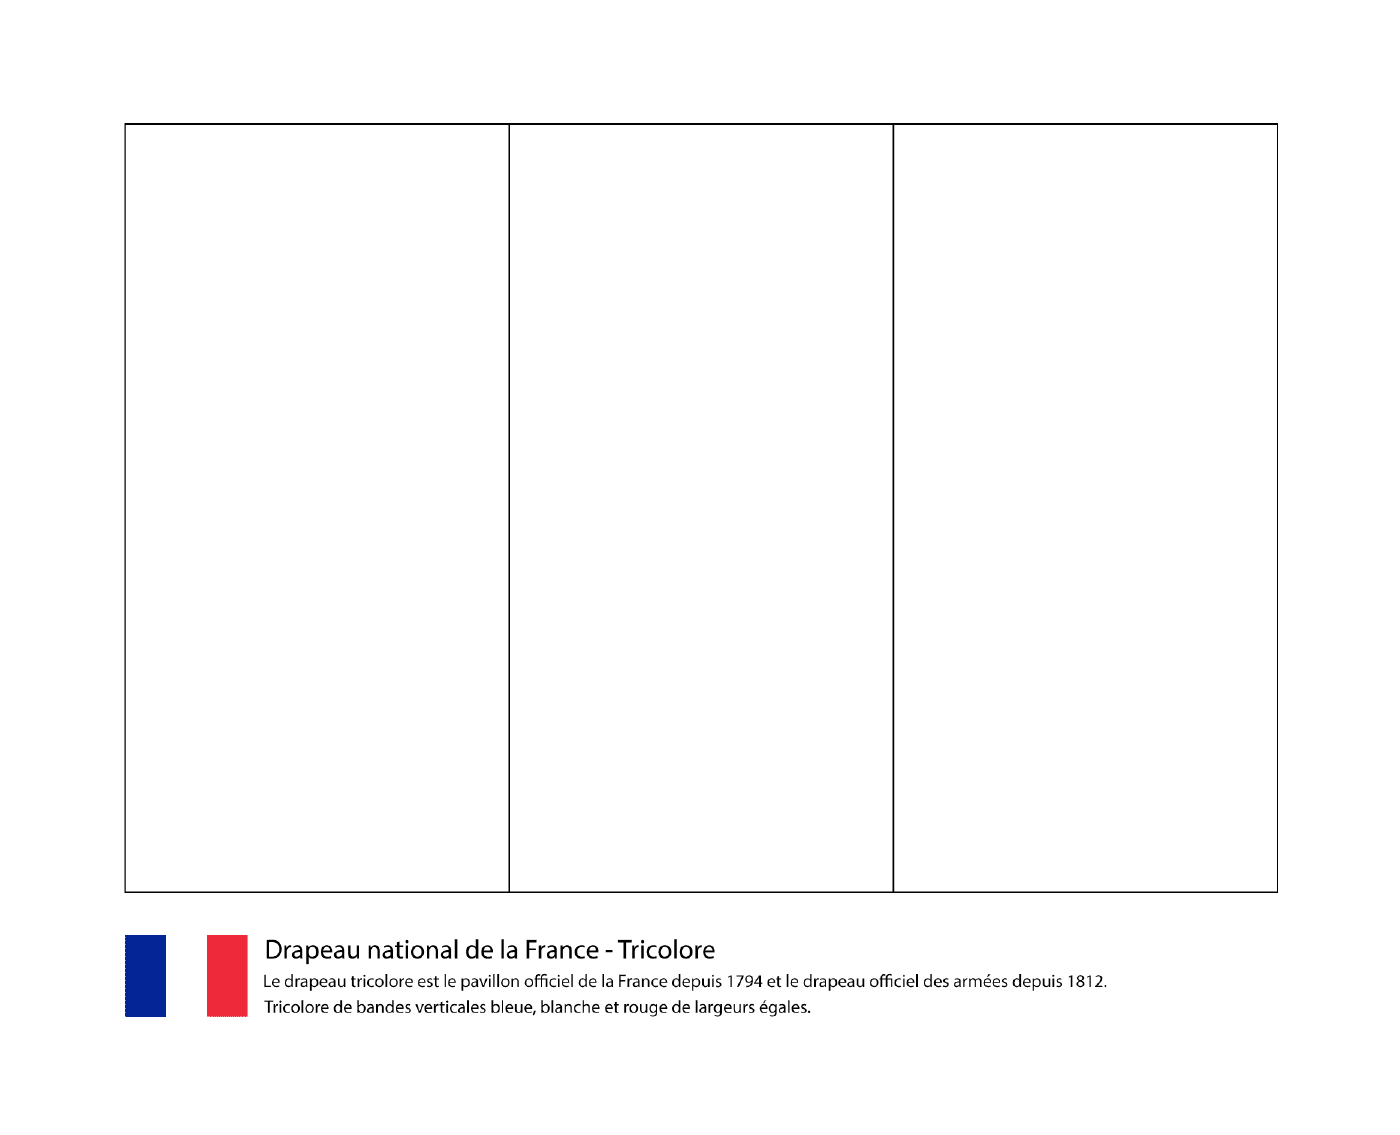  三色法国国旗 